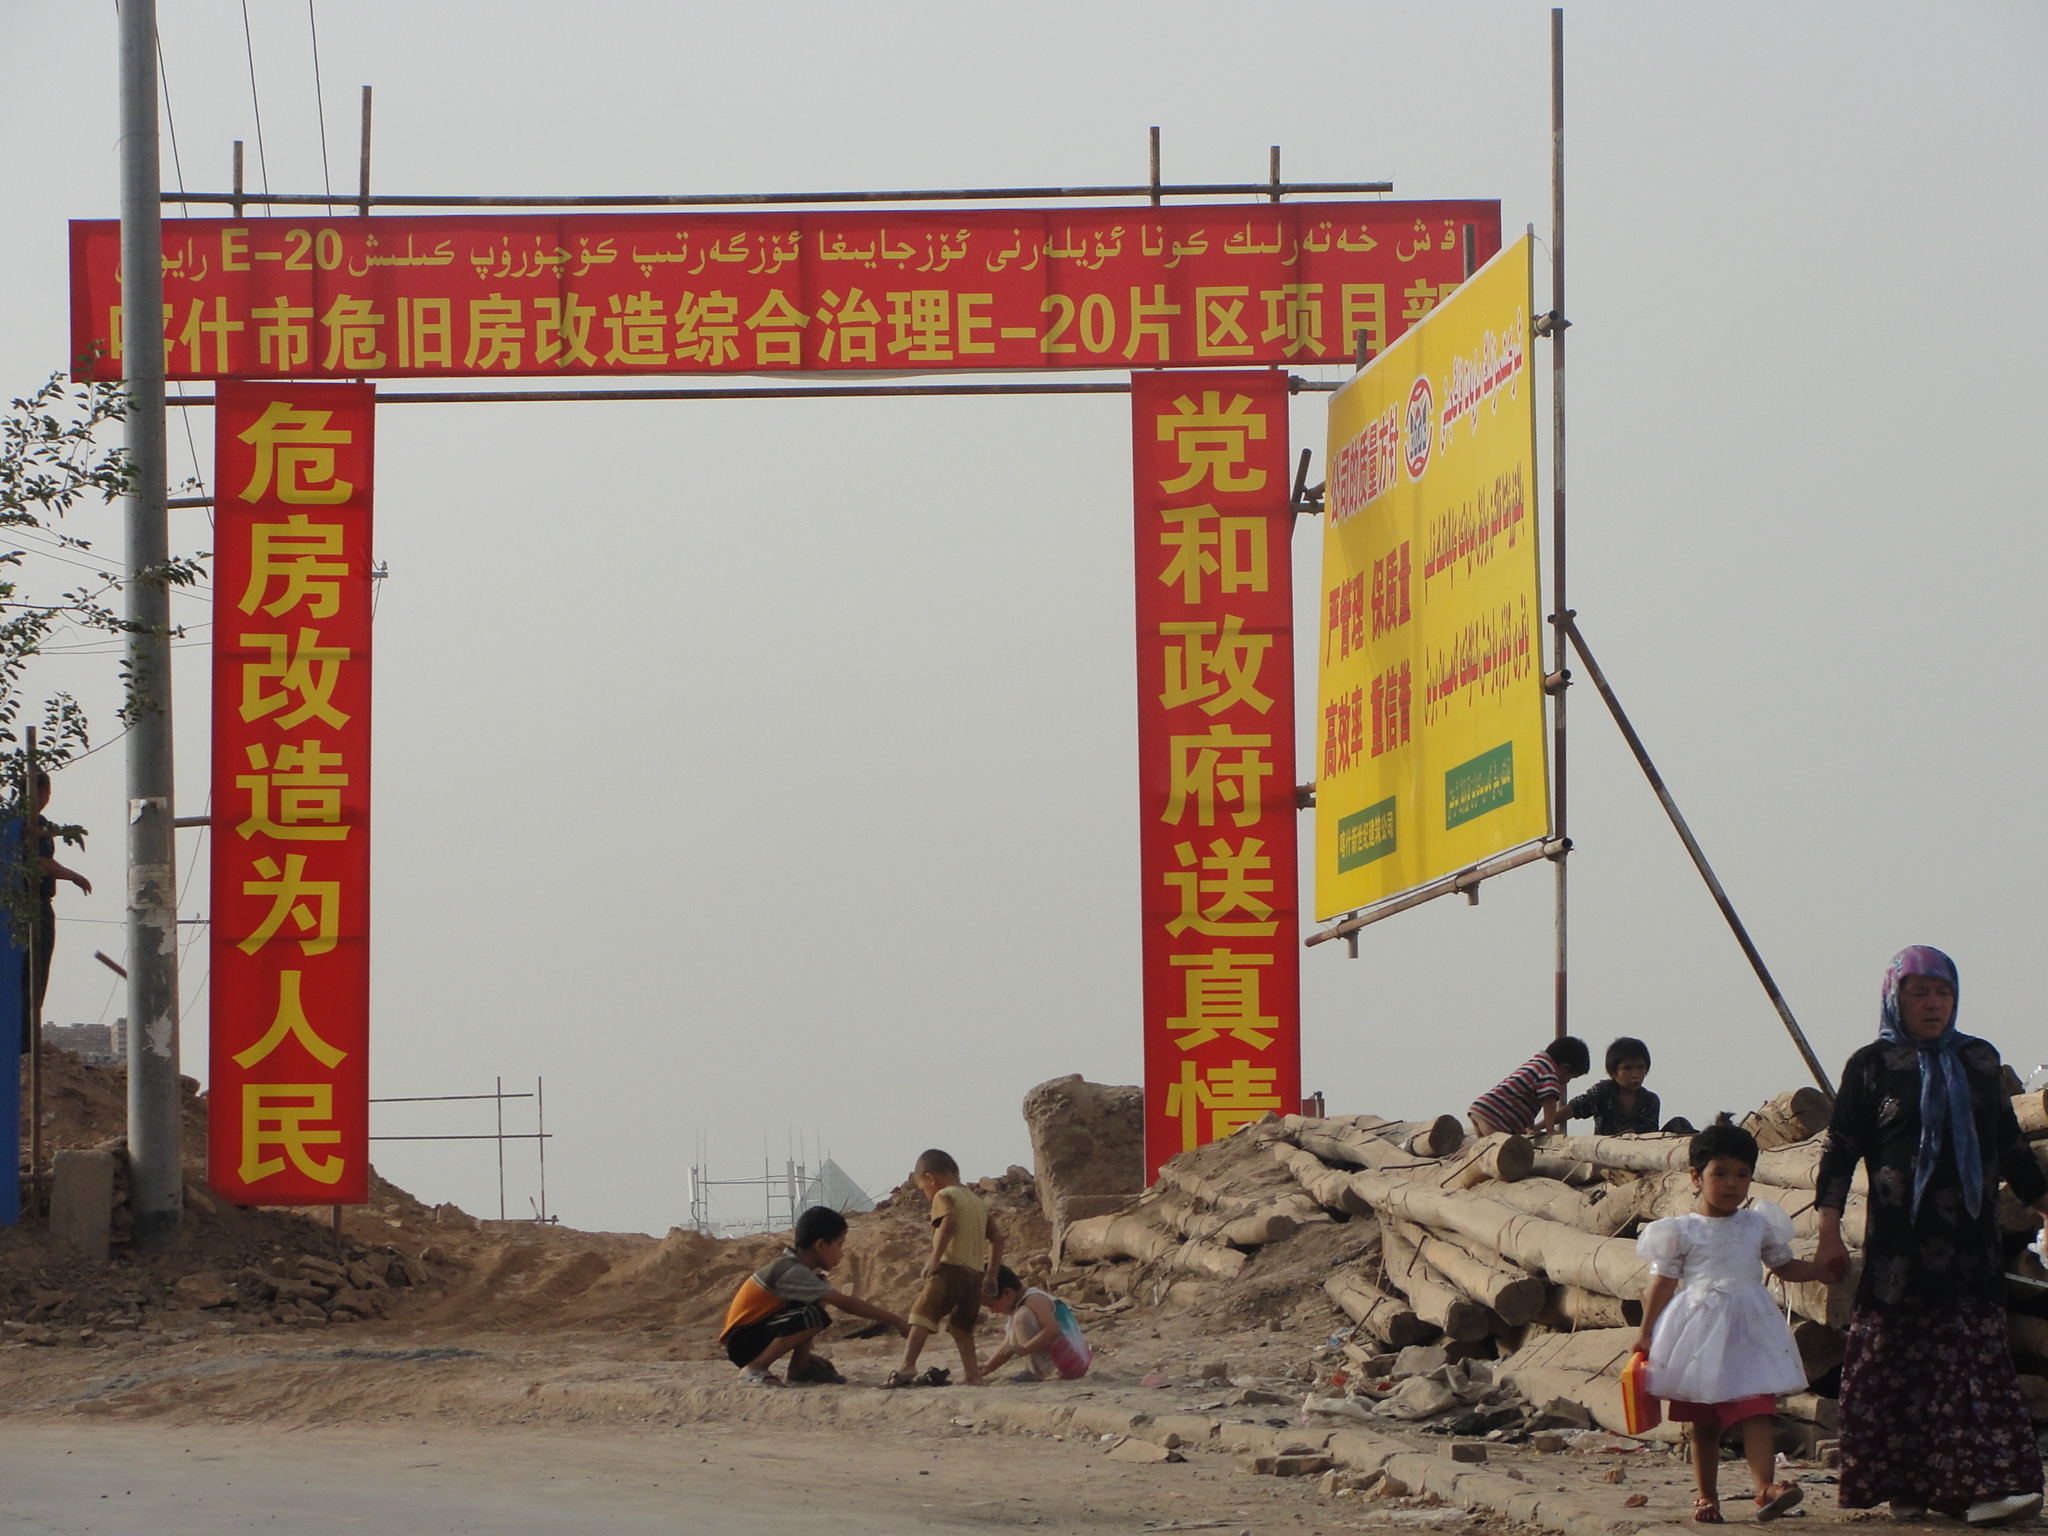 Kommt mit dem Boom die Versöhnung? – Ethnische Konflikte in Xinjiang und die Pläne der Regierung